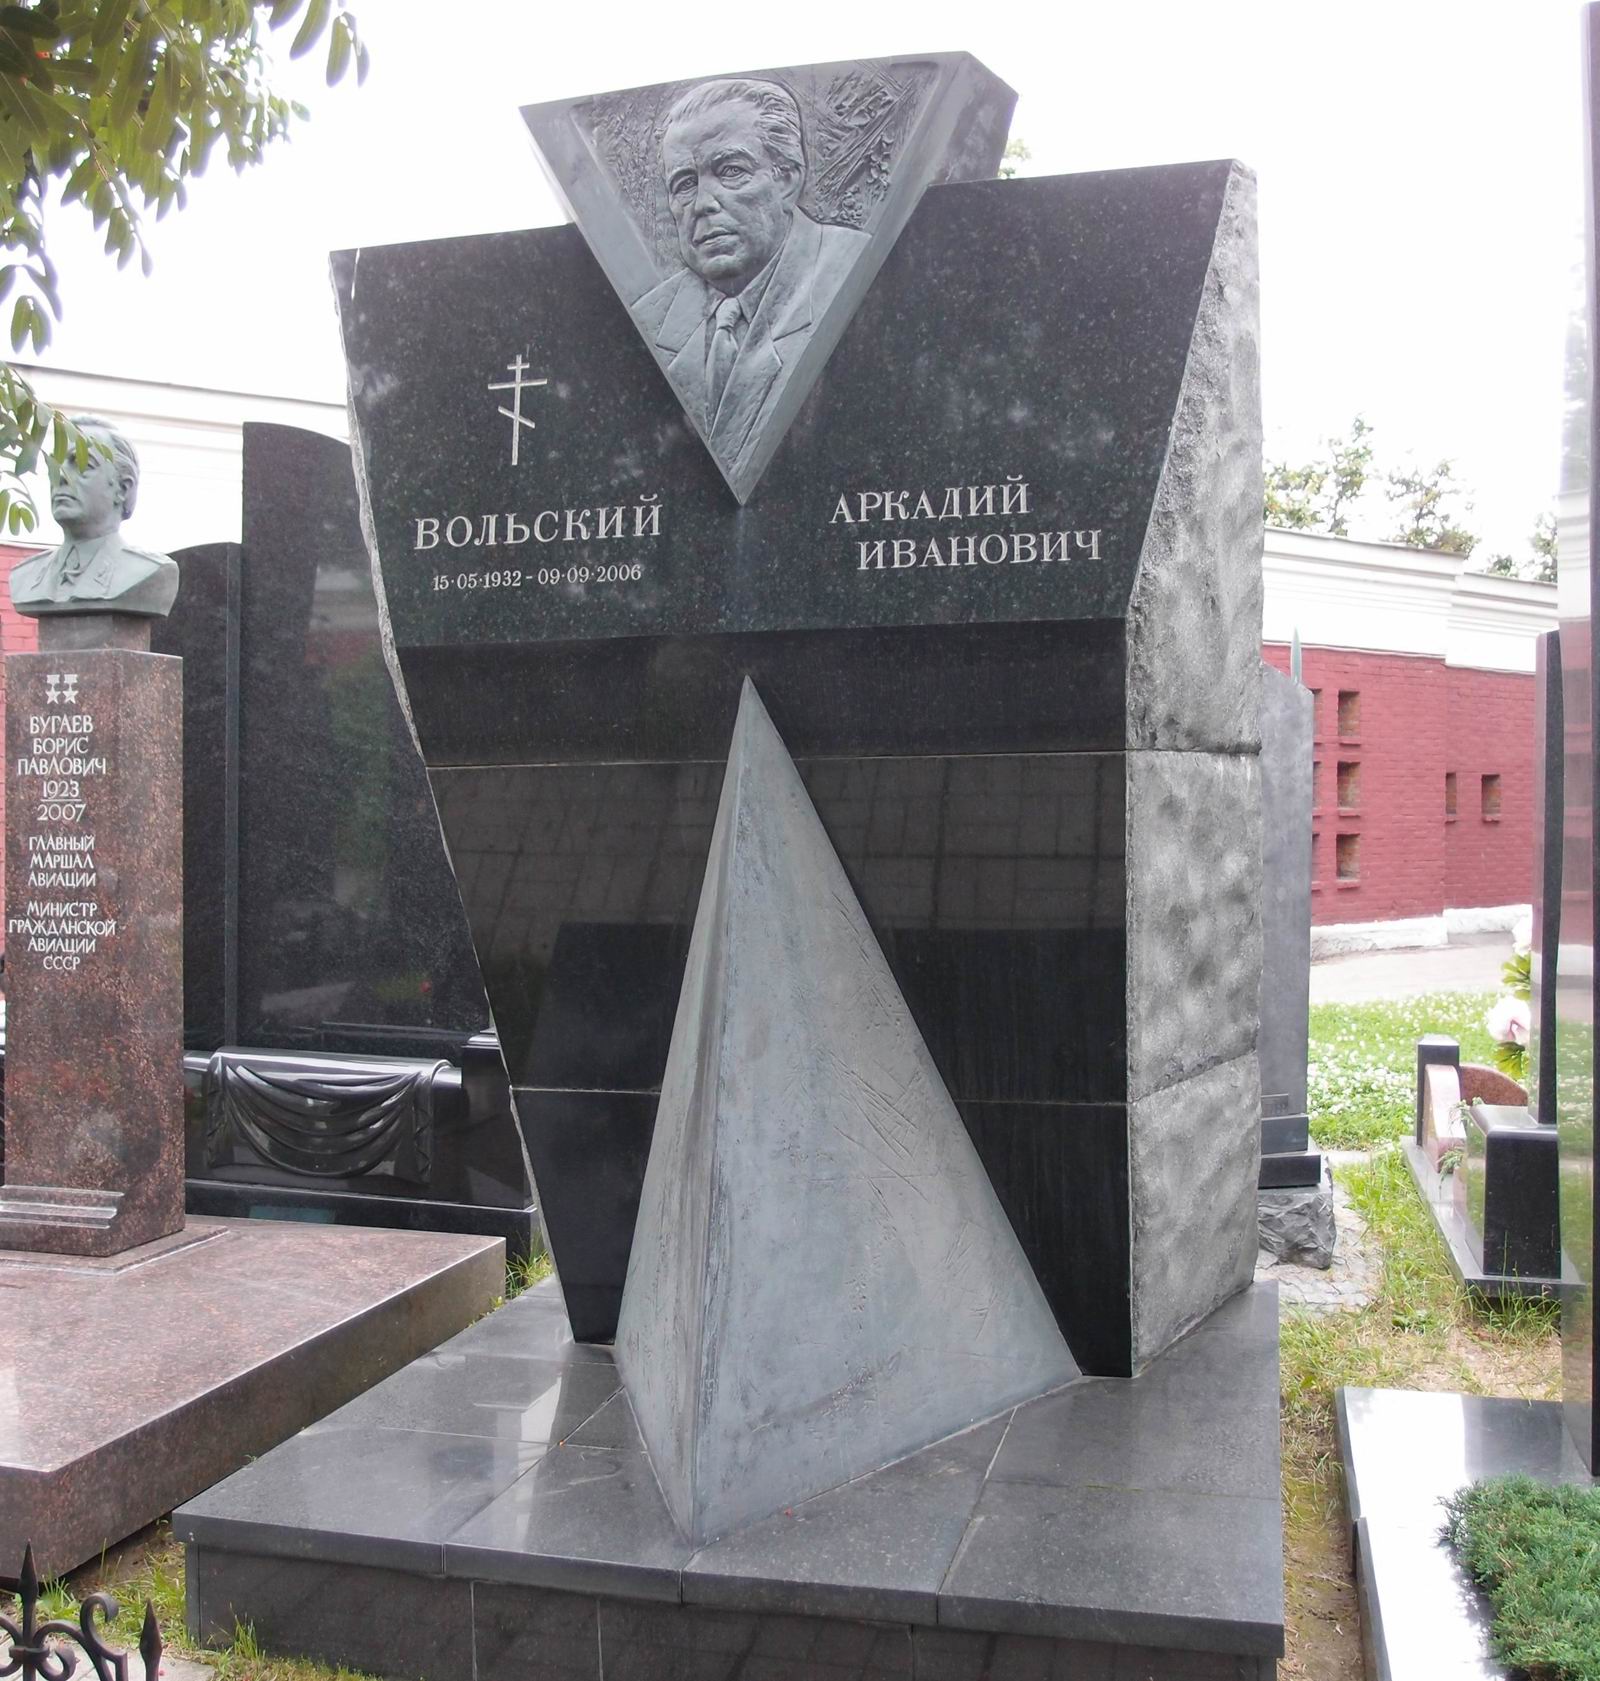 Памятник на могиле Вольского А.И. (1932-2006), ск. А.Рукавишников, арх. Р.Нарский, на Новодевичьем кладбище (11-5-8).